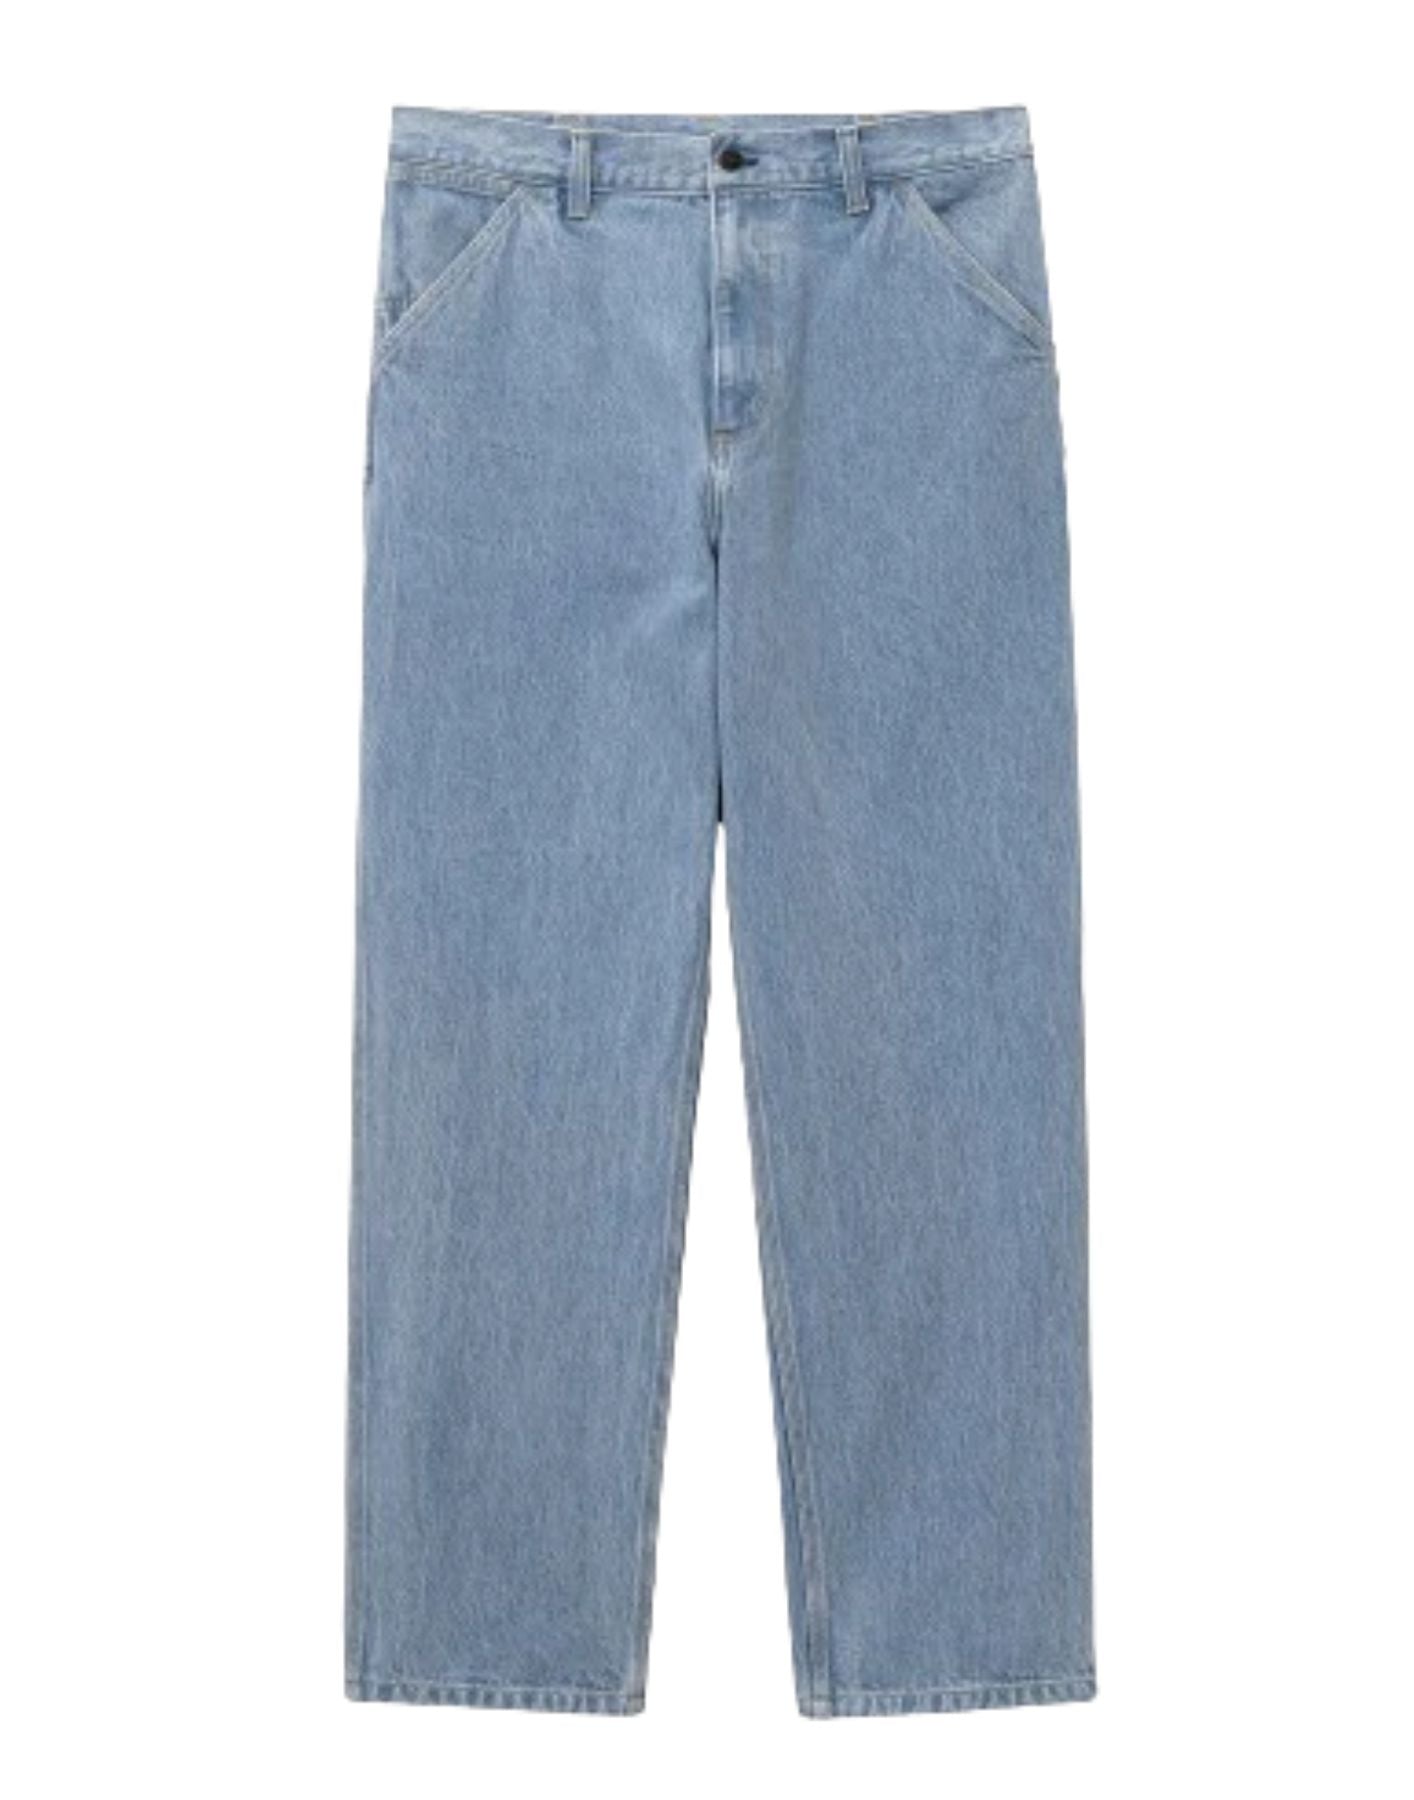 Jeans für Mann I032024 Blue Stone bleichte gebleicht CARHARTT WIP